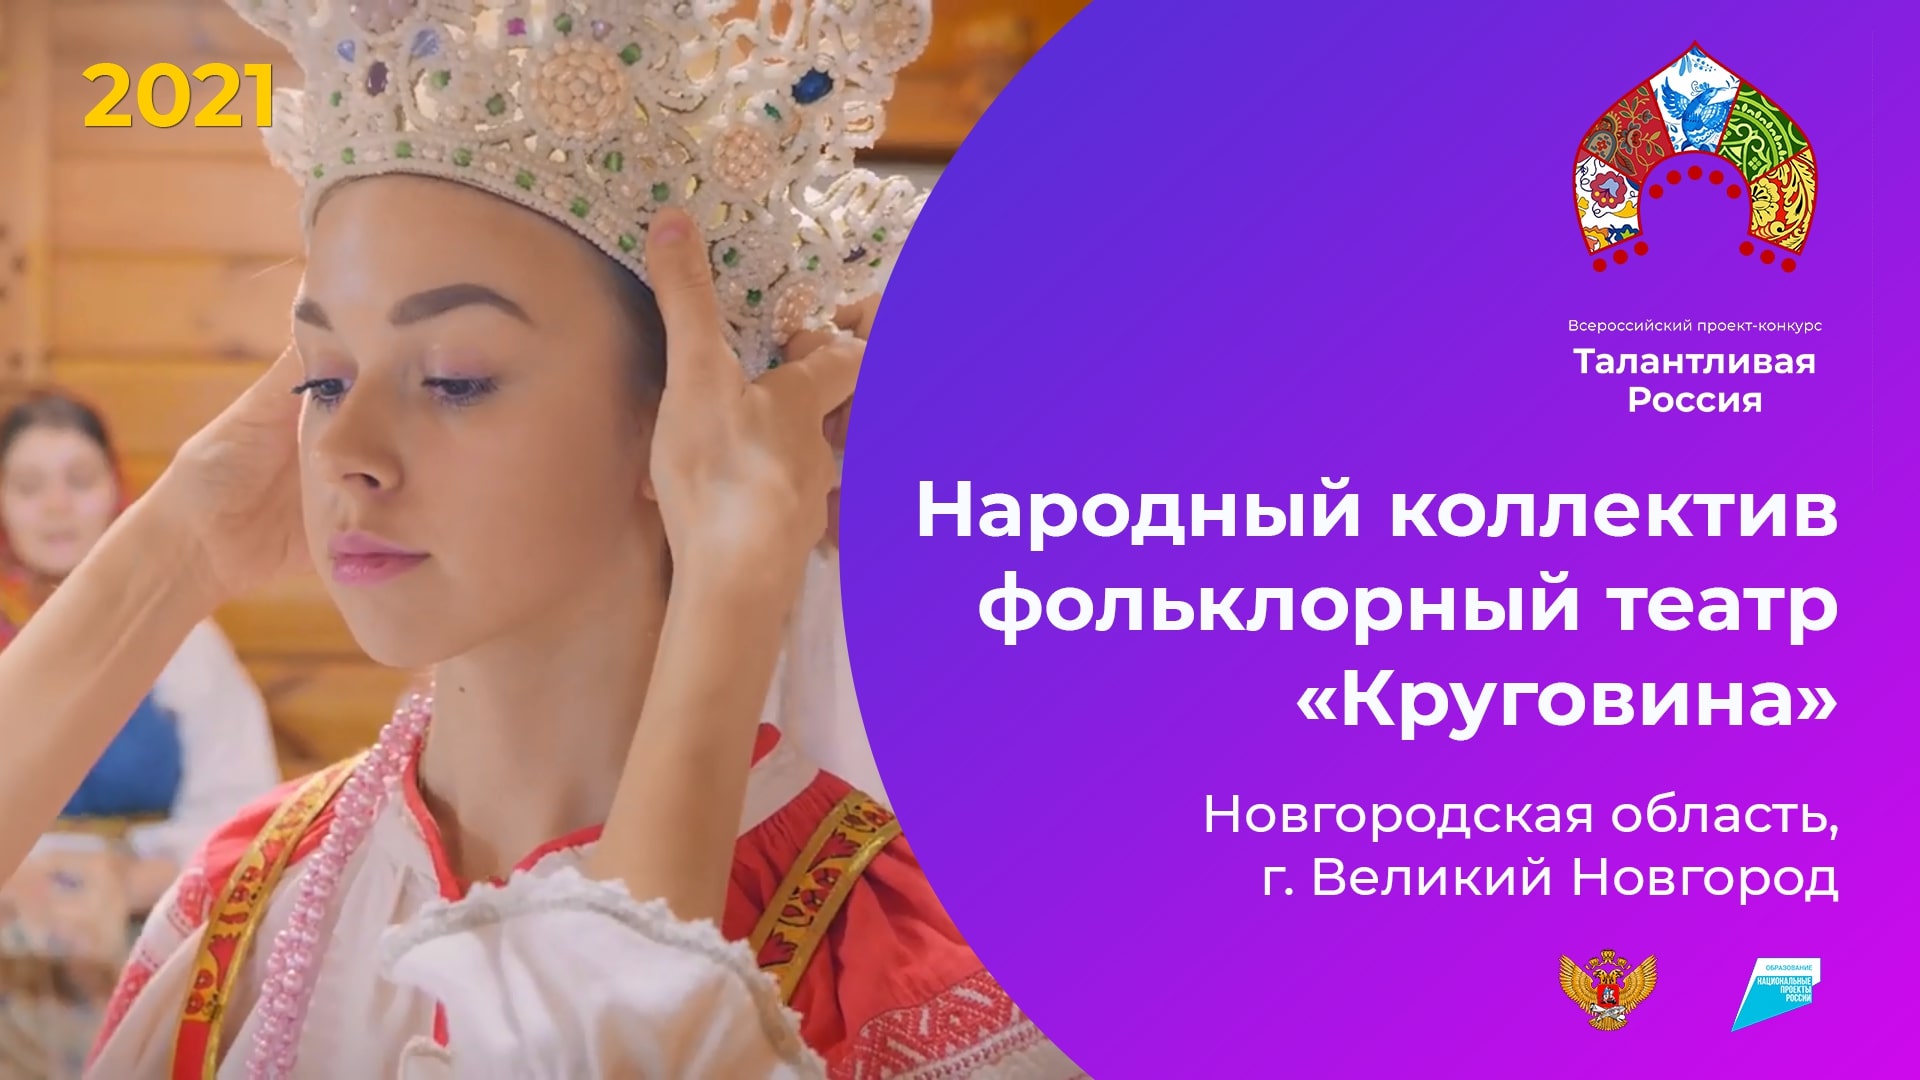 Народный коллектив фольклорный театр «Круговина»